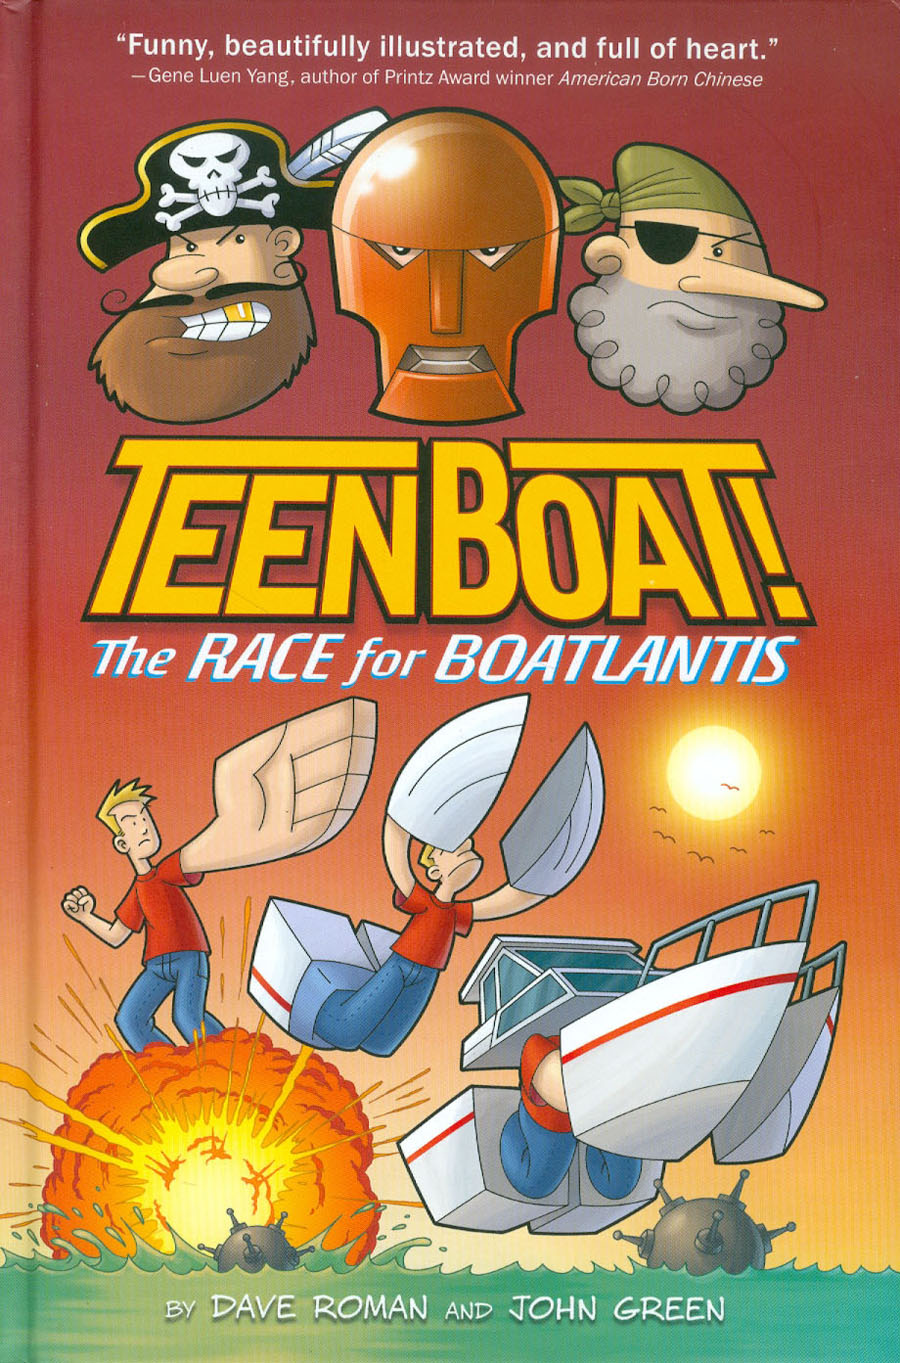 Teen Boat Vol 2 Race For Boatlantis HC